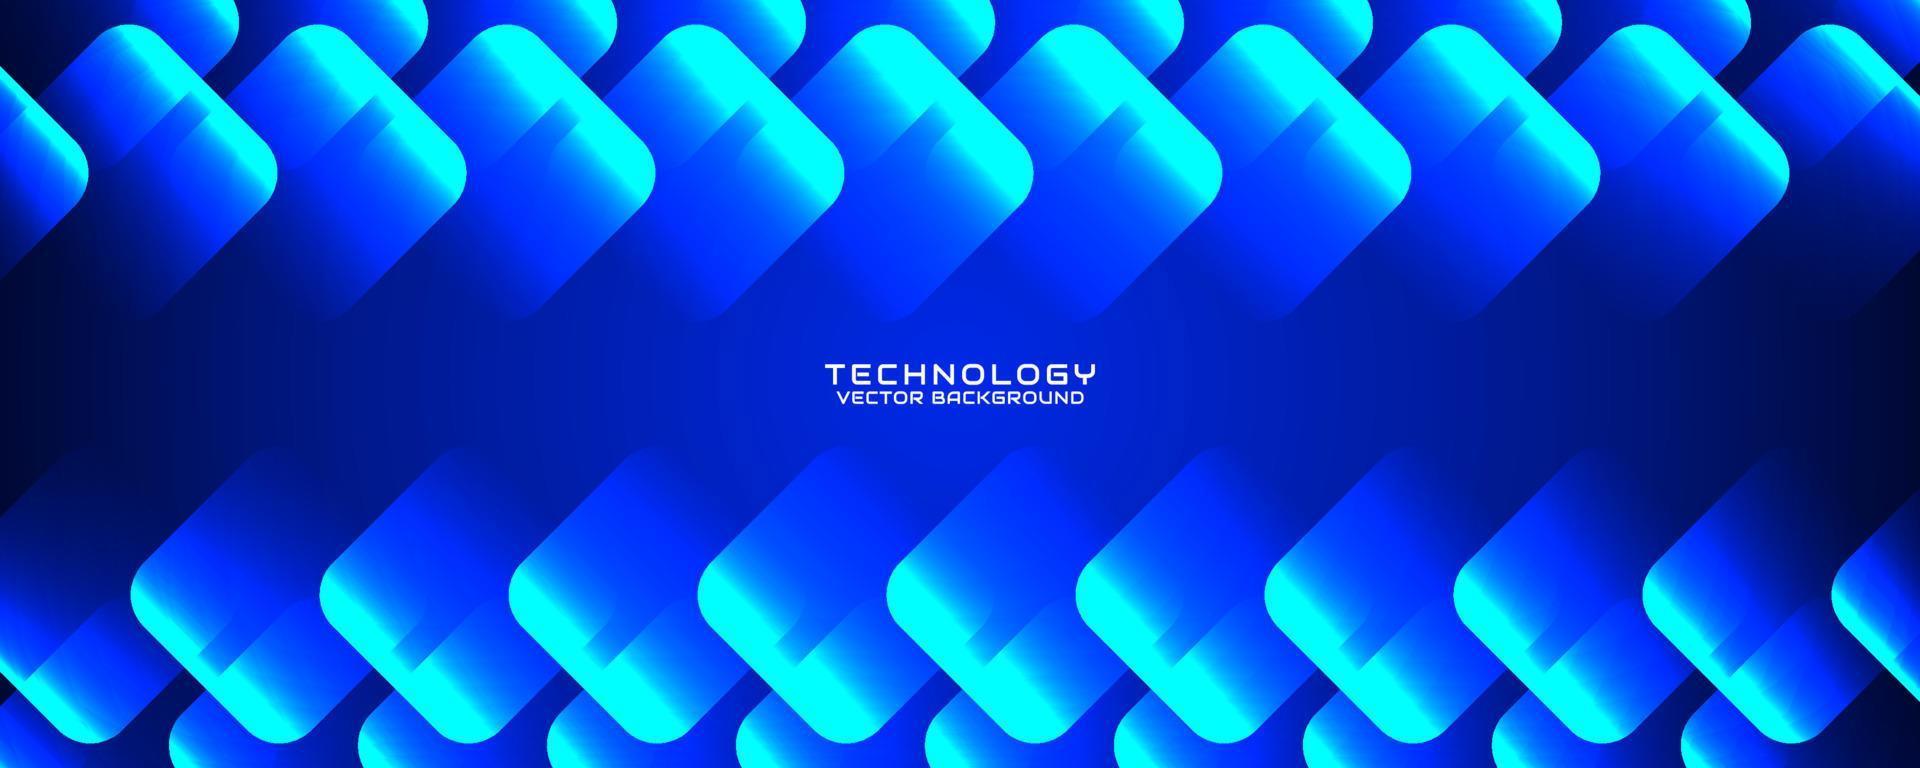 Capa de superposición de fondo abstracto de tecnología azul 3d en el espacio oscuro con efecto de cuadrados redondeados. concepto de estilo de recorte de elemento de diseño gráfico para banner, volante, tarjeta, portada de folleto o página de inicio vector